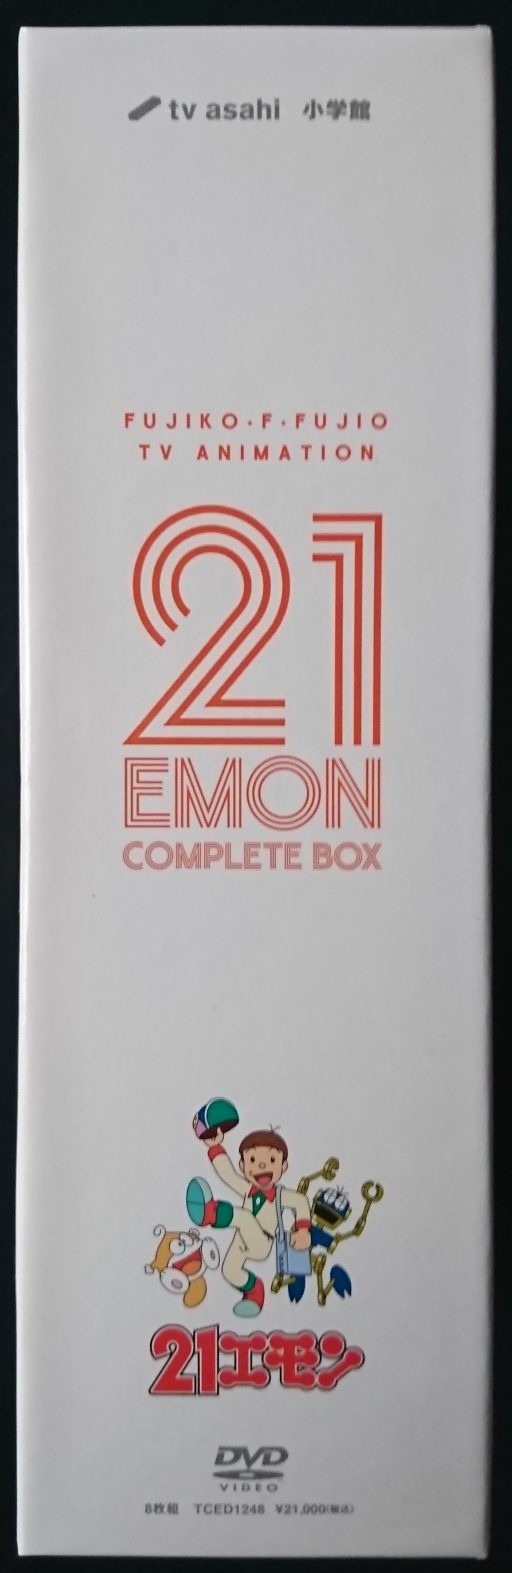 21エモンComplete Box（DVD－BOX）レビュー - ゲーム小屋たるる